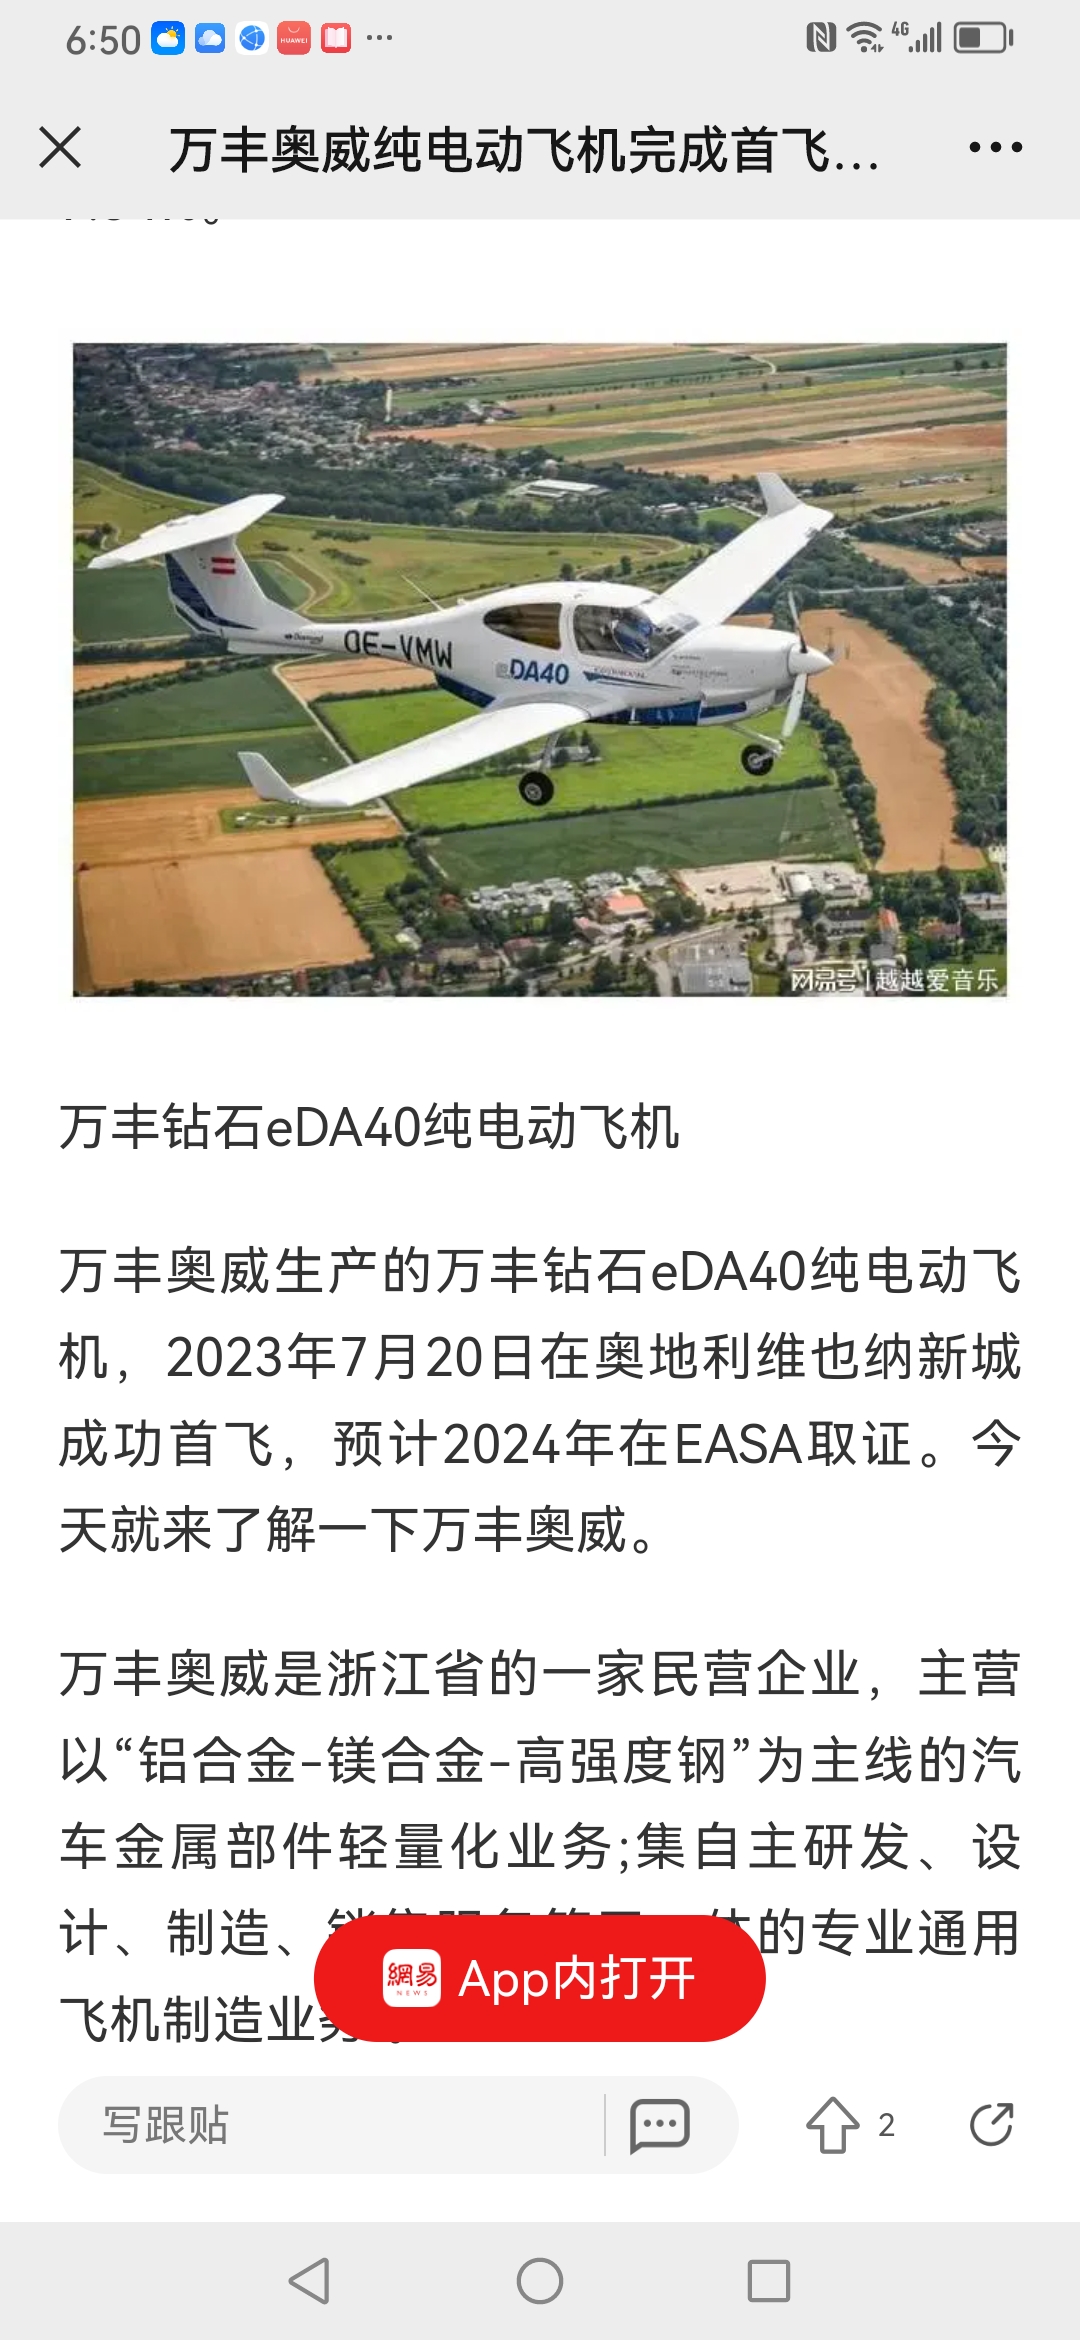 加拿大,中国(青岛,新昌)四大飞机制造基地,万丰奥威(002085